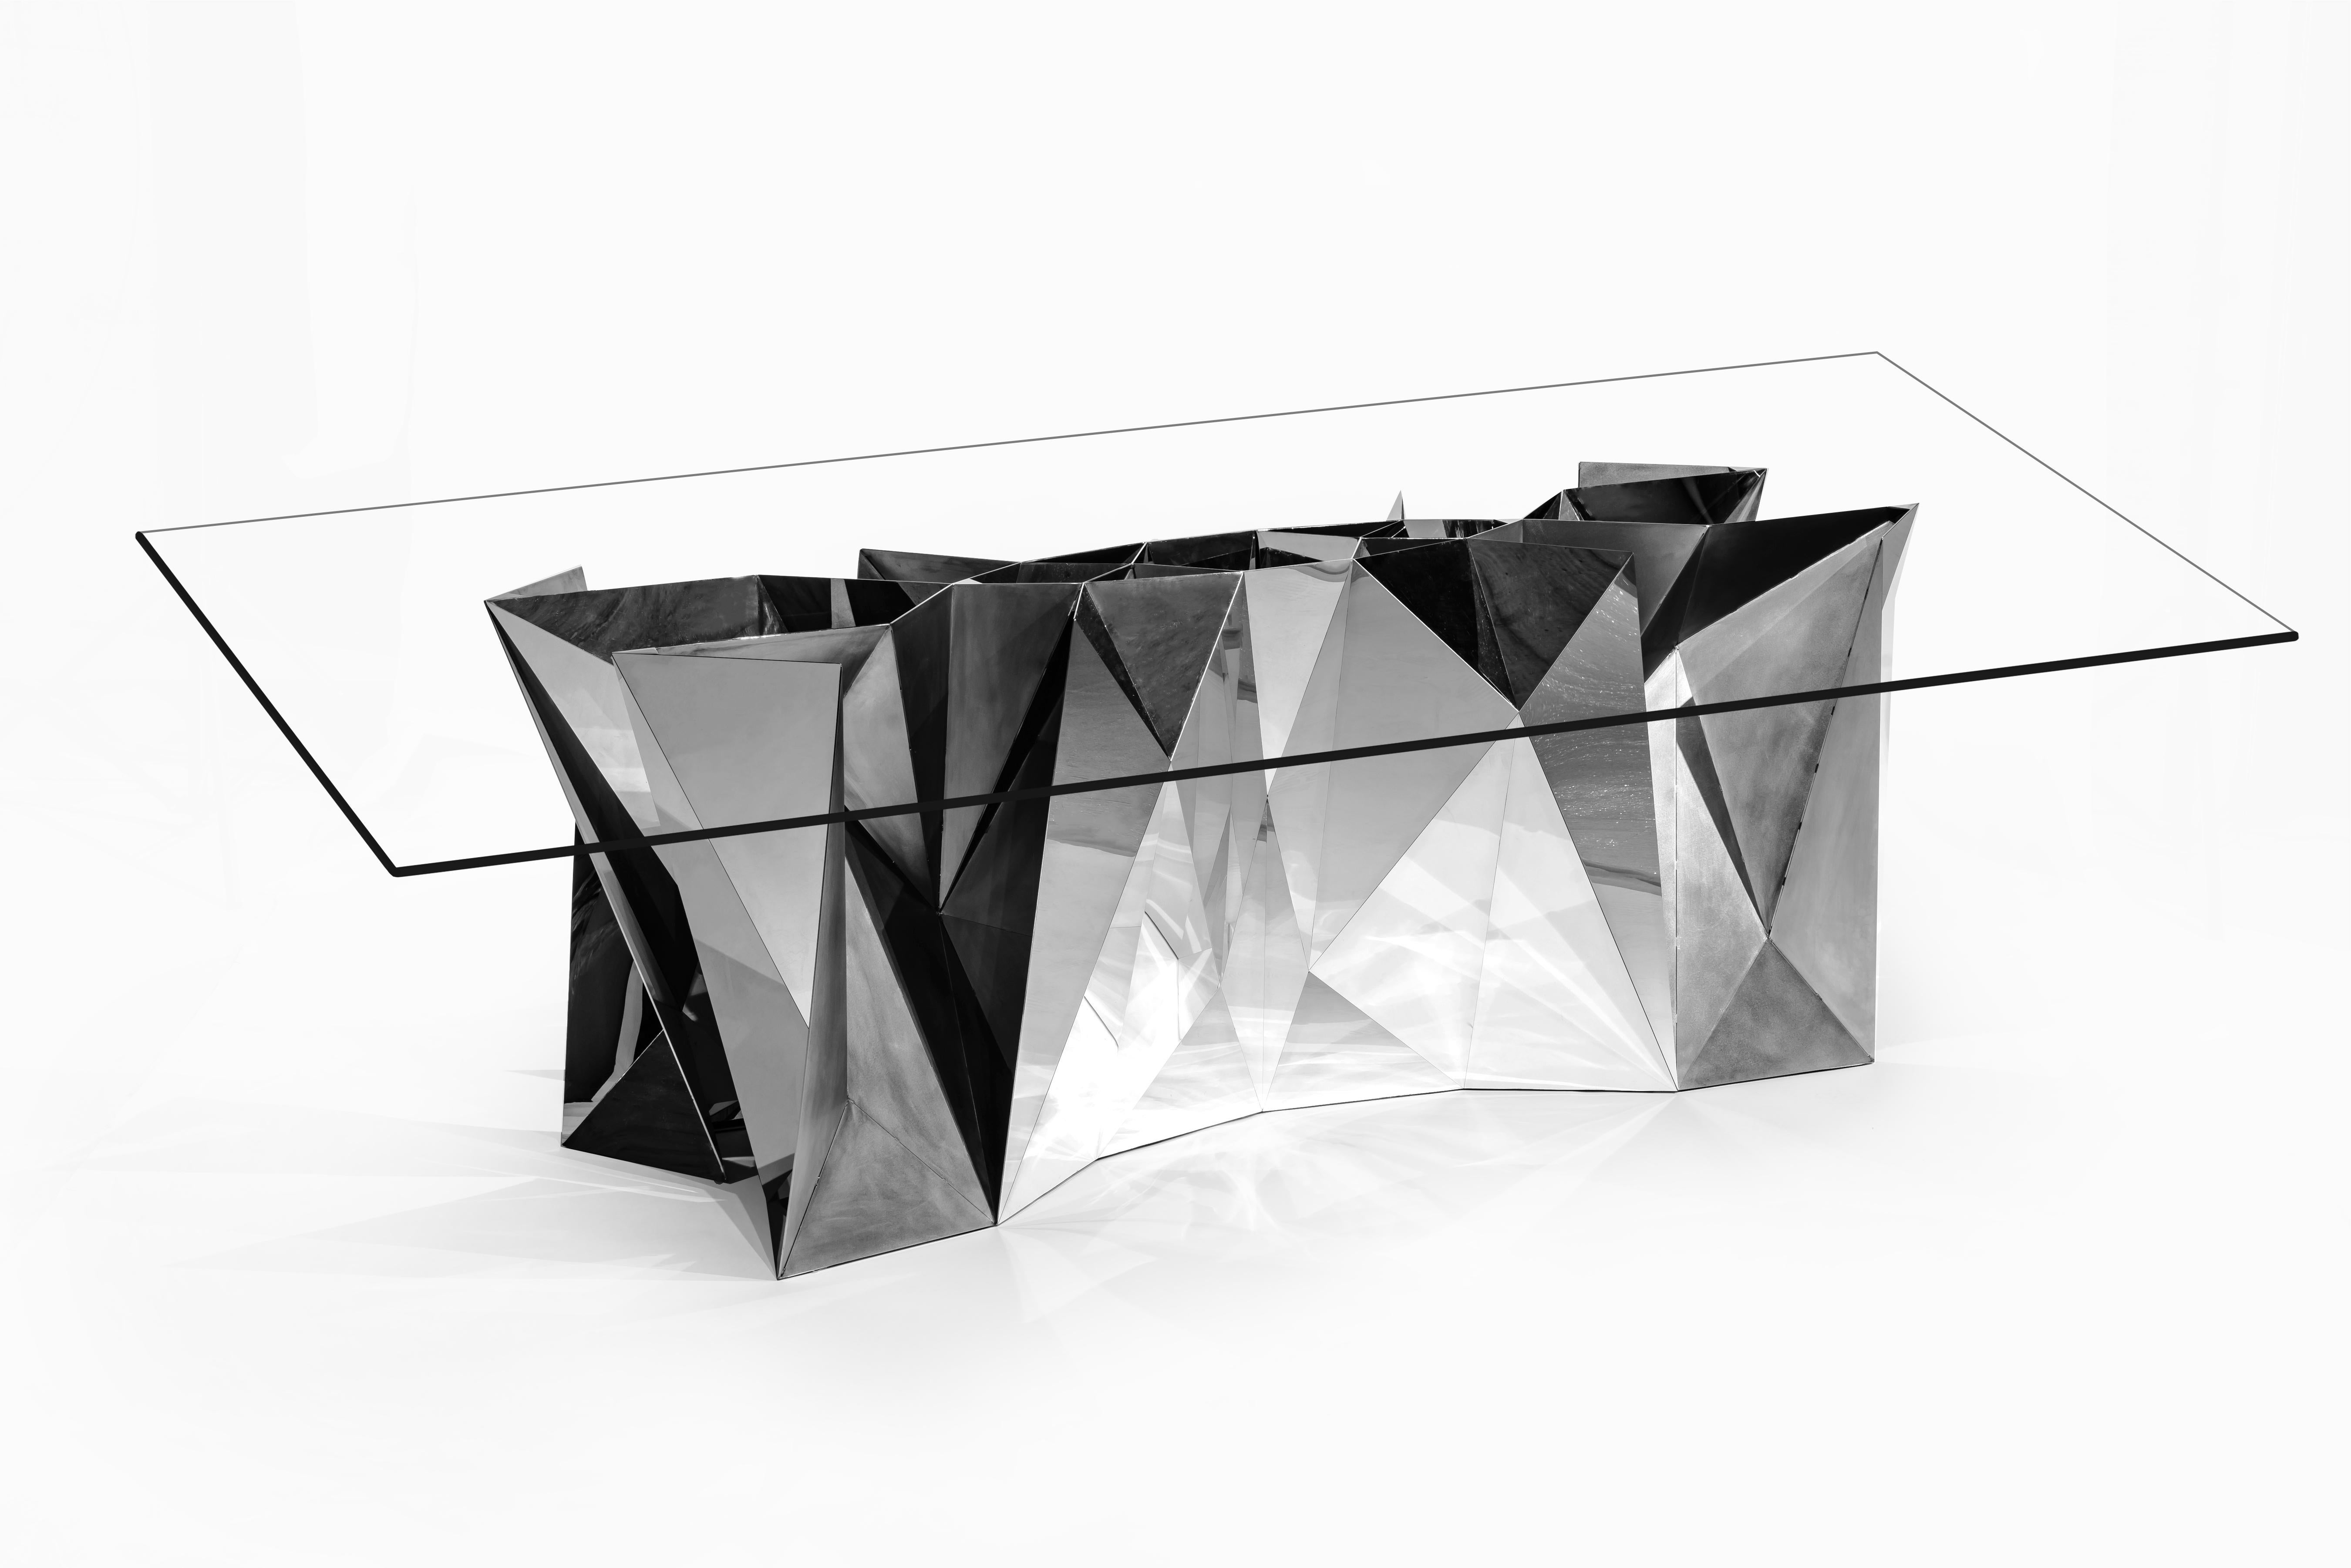 Cette table au design élégant a été créée à l'aide d'objets numériques artisanaux, les mêmes techniques de fabrication conçues dans le laboratoire numérique de Zhoujie. Les racines numériques de l'œuvre lui confèrent une esthétique architecturale et